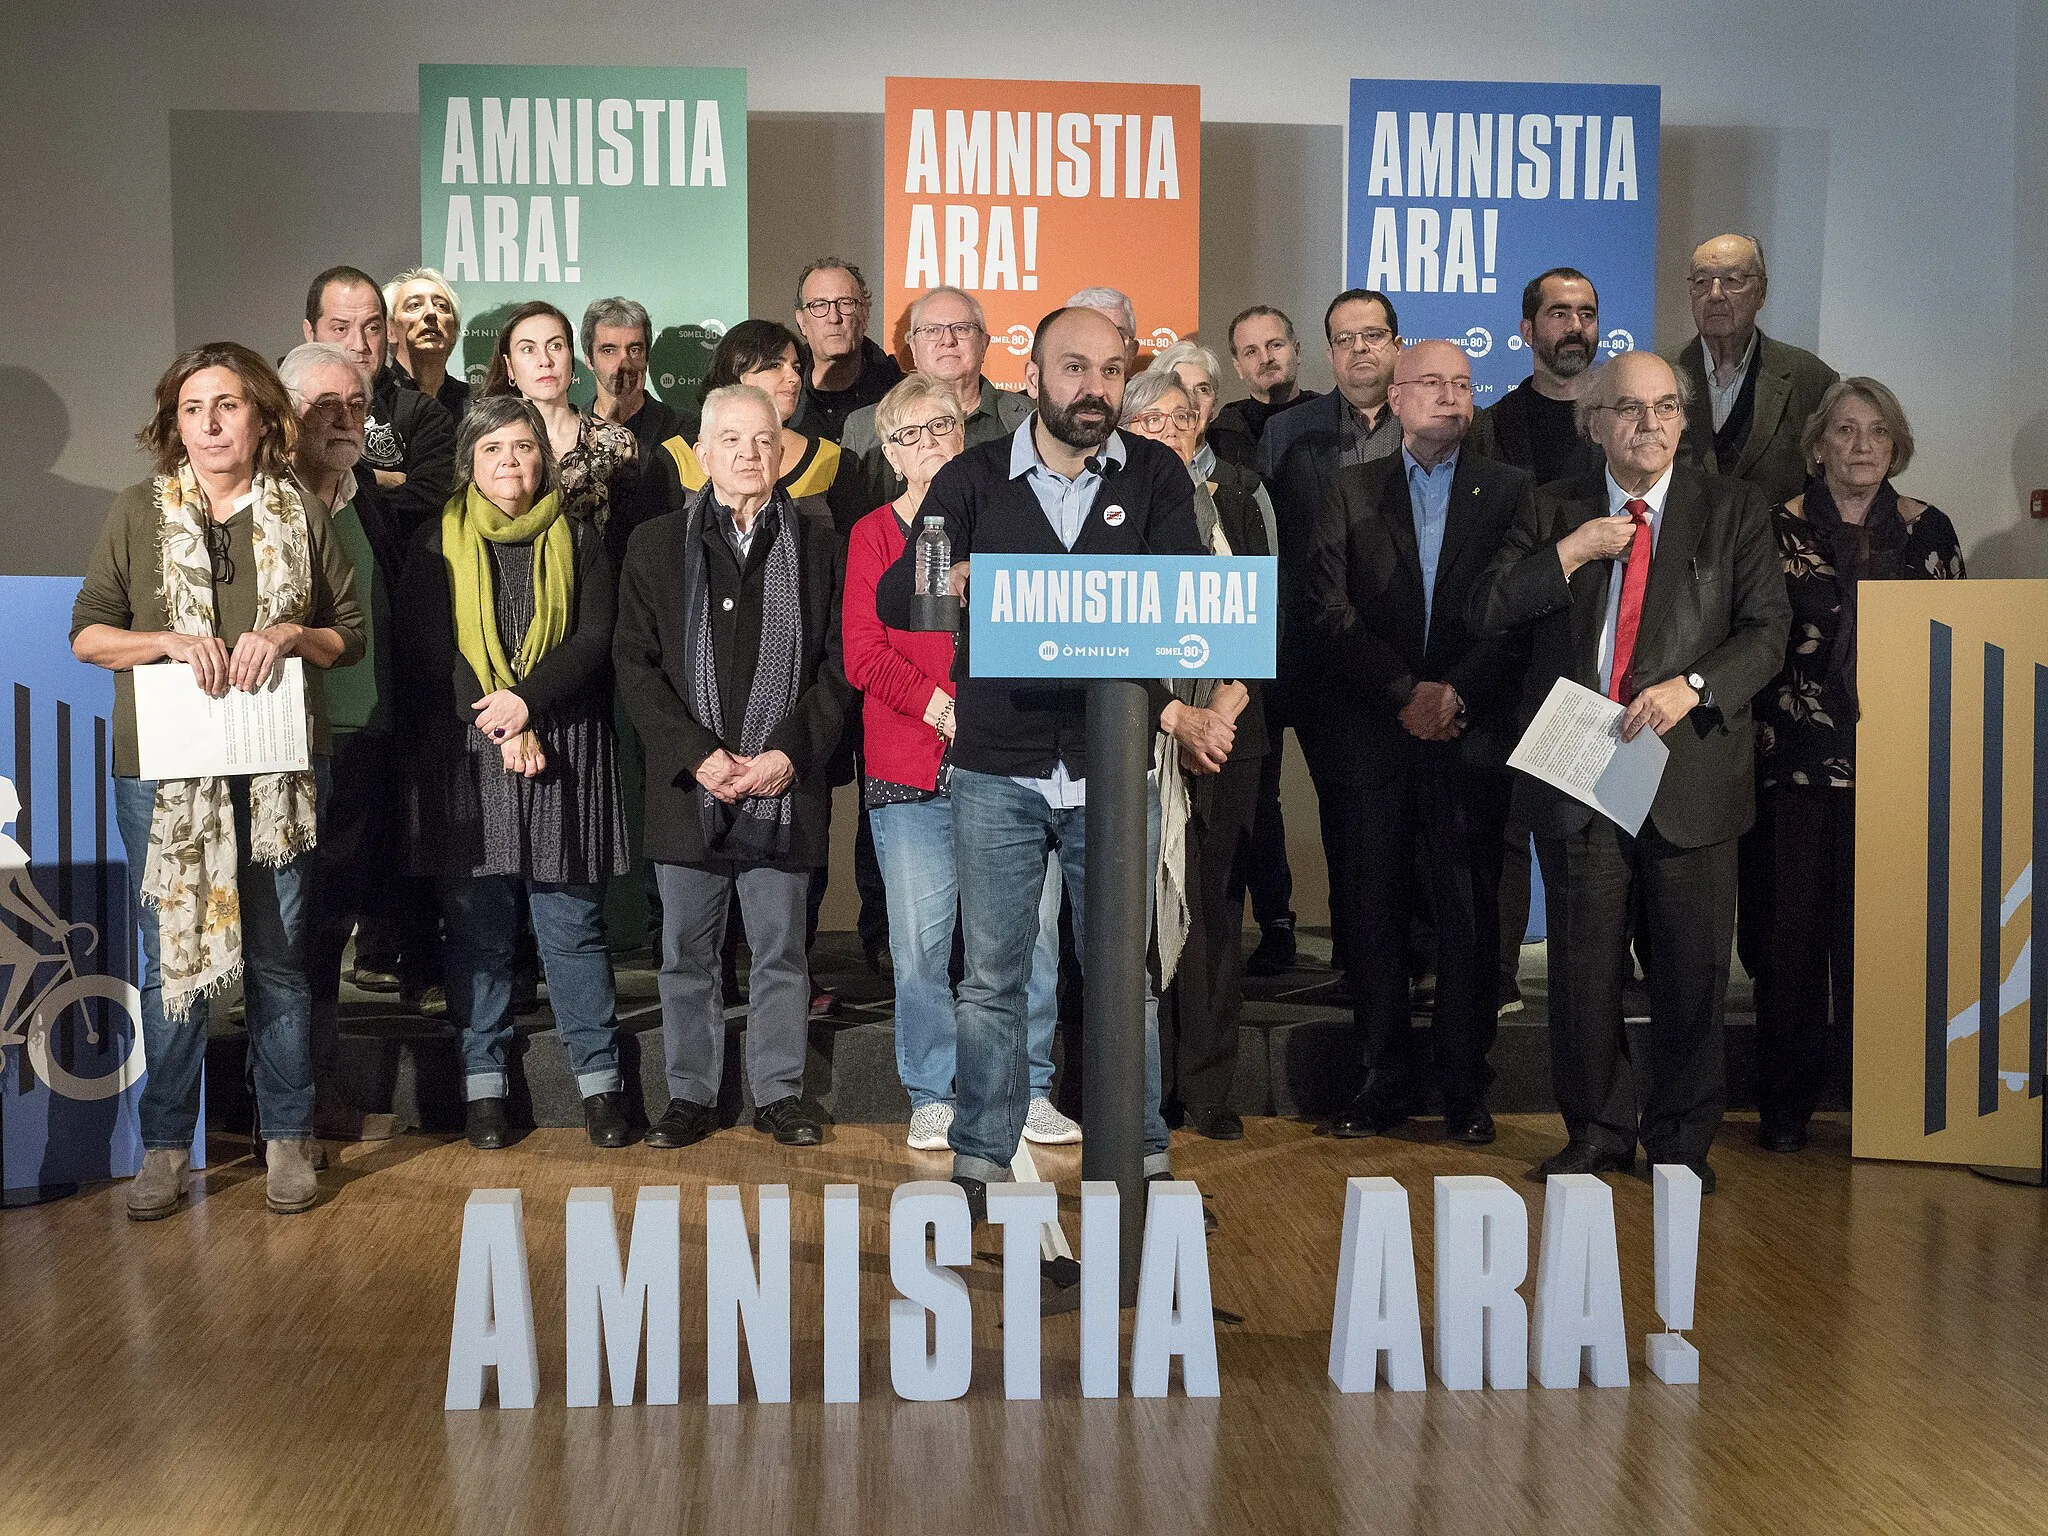 Photo showing: La plataforma Som el 80% presenta la campanya Amnistia ara

©dani codina/Òmnium